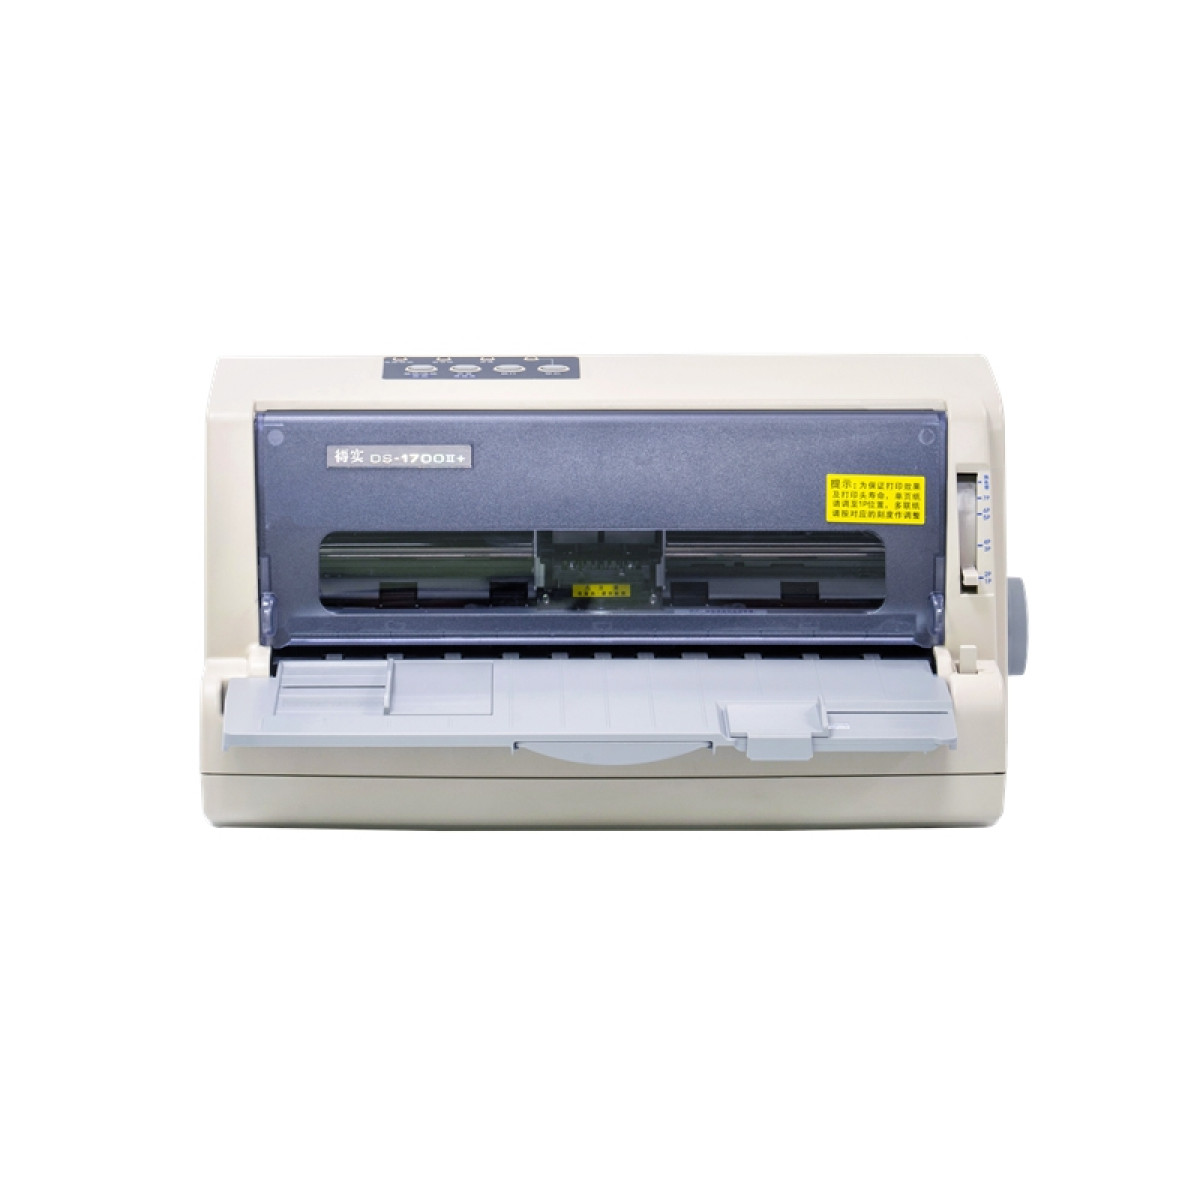 得实（Dascom）DS-1700II+ 高性能24针82列平推票据针式打印机